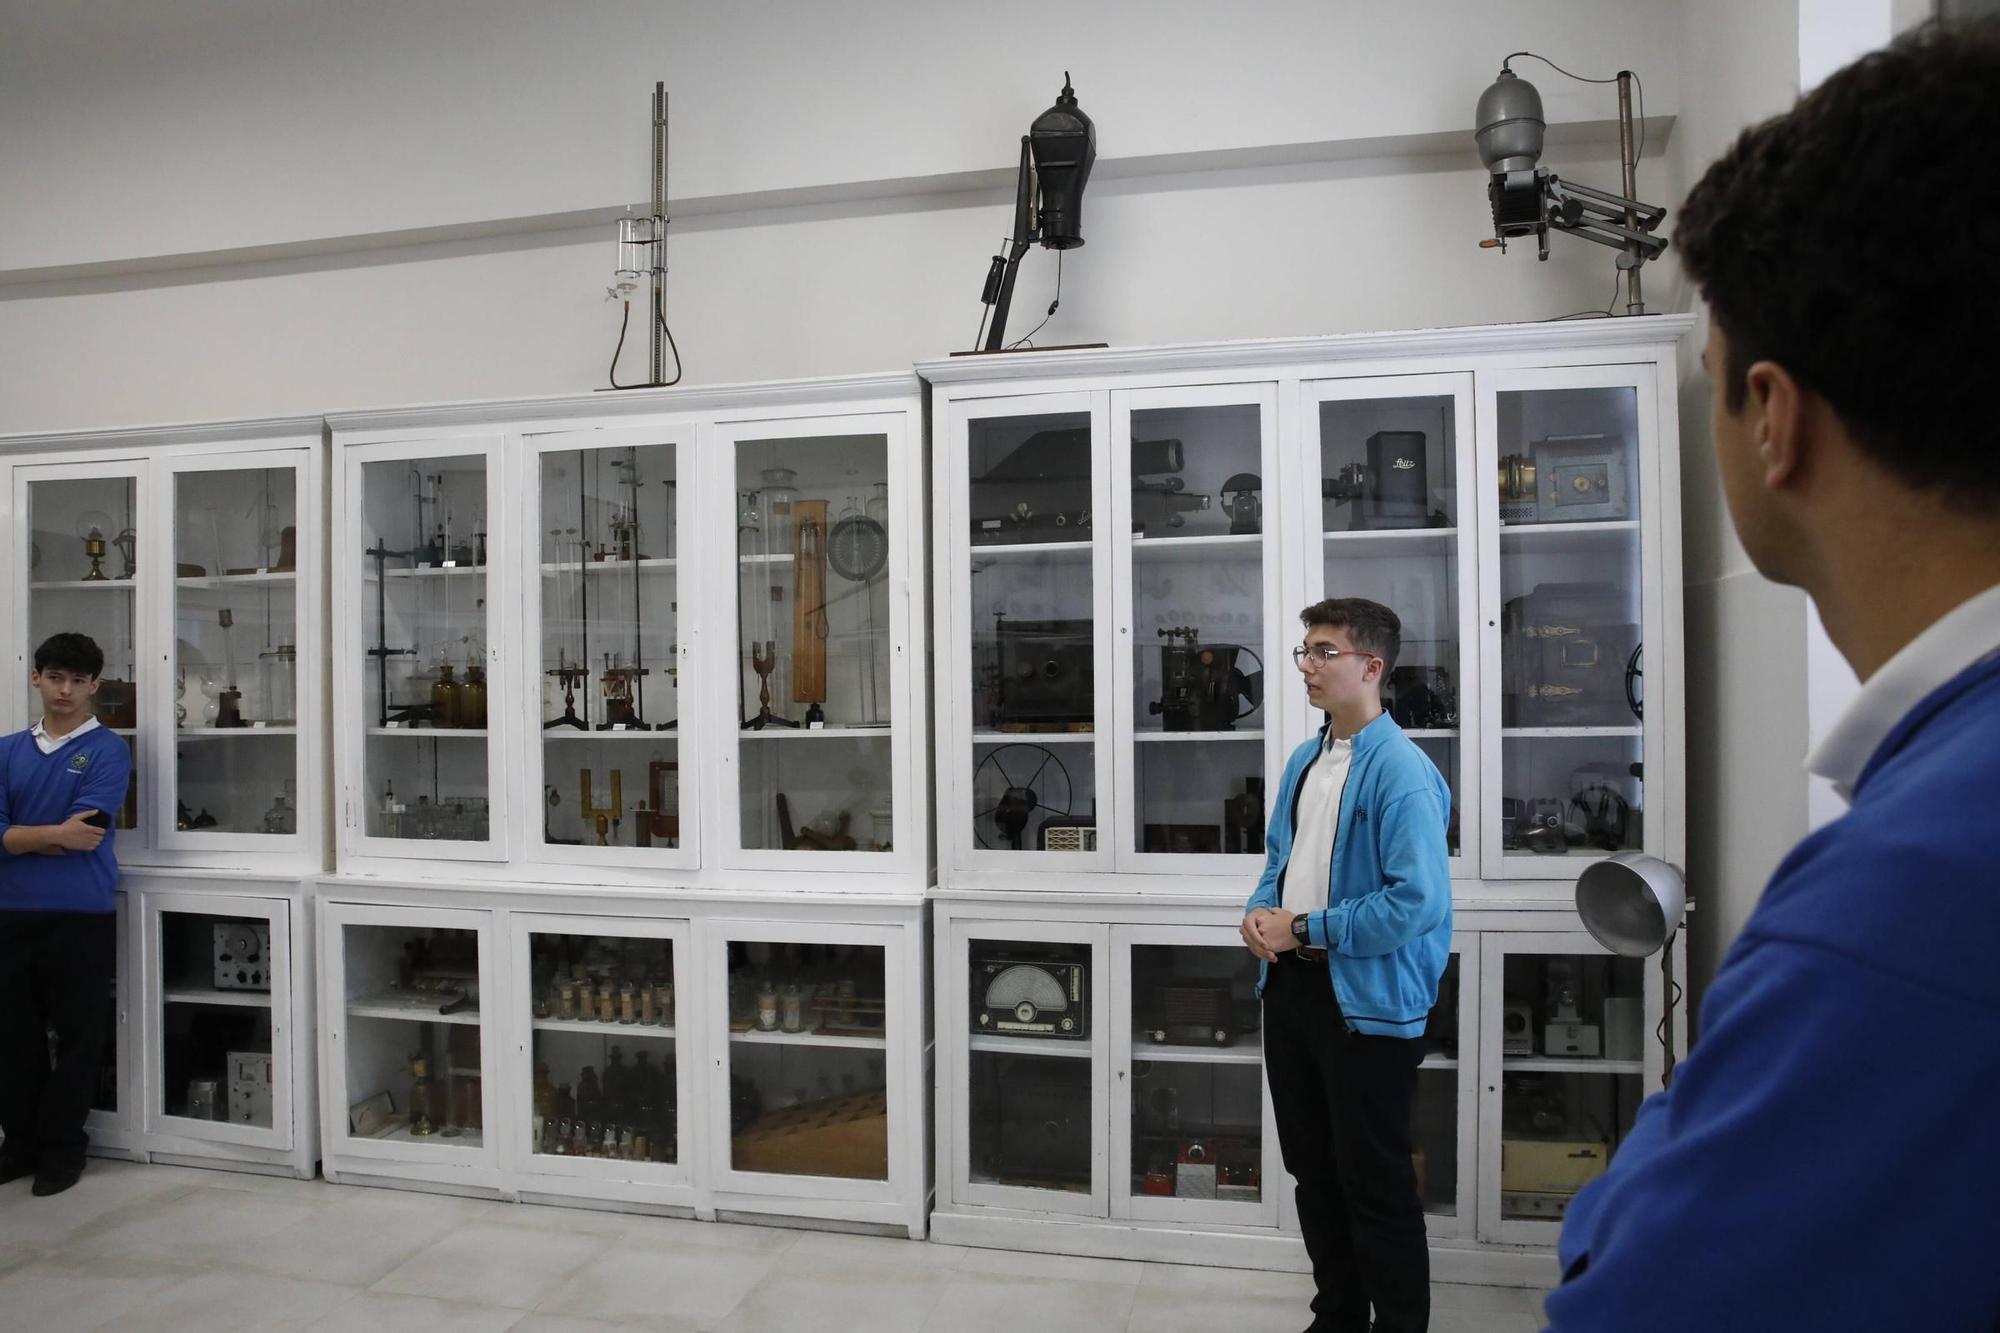 Así es el Museo de la Ciencia del colegio de los jesuitas de Gijón (en imágenes)